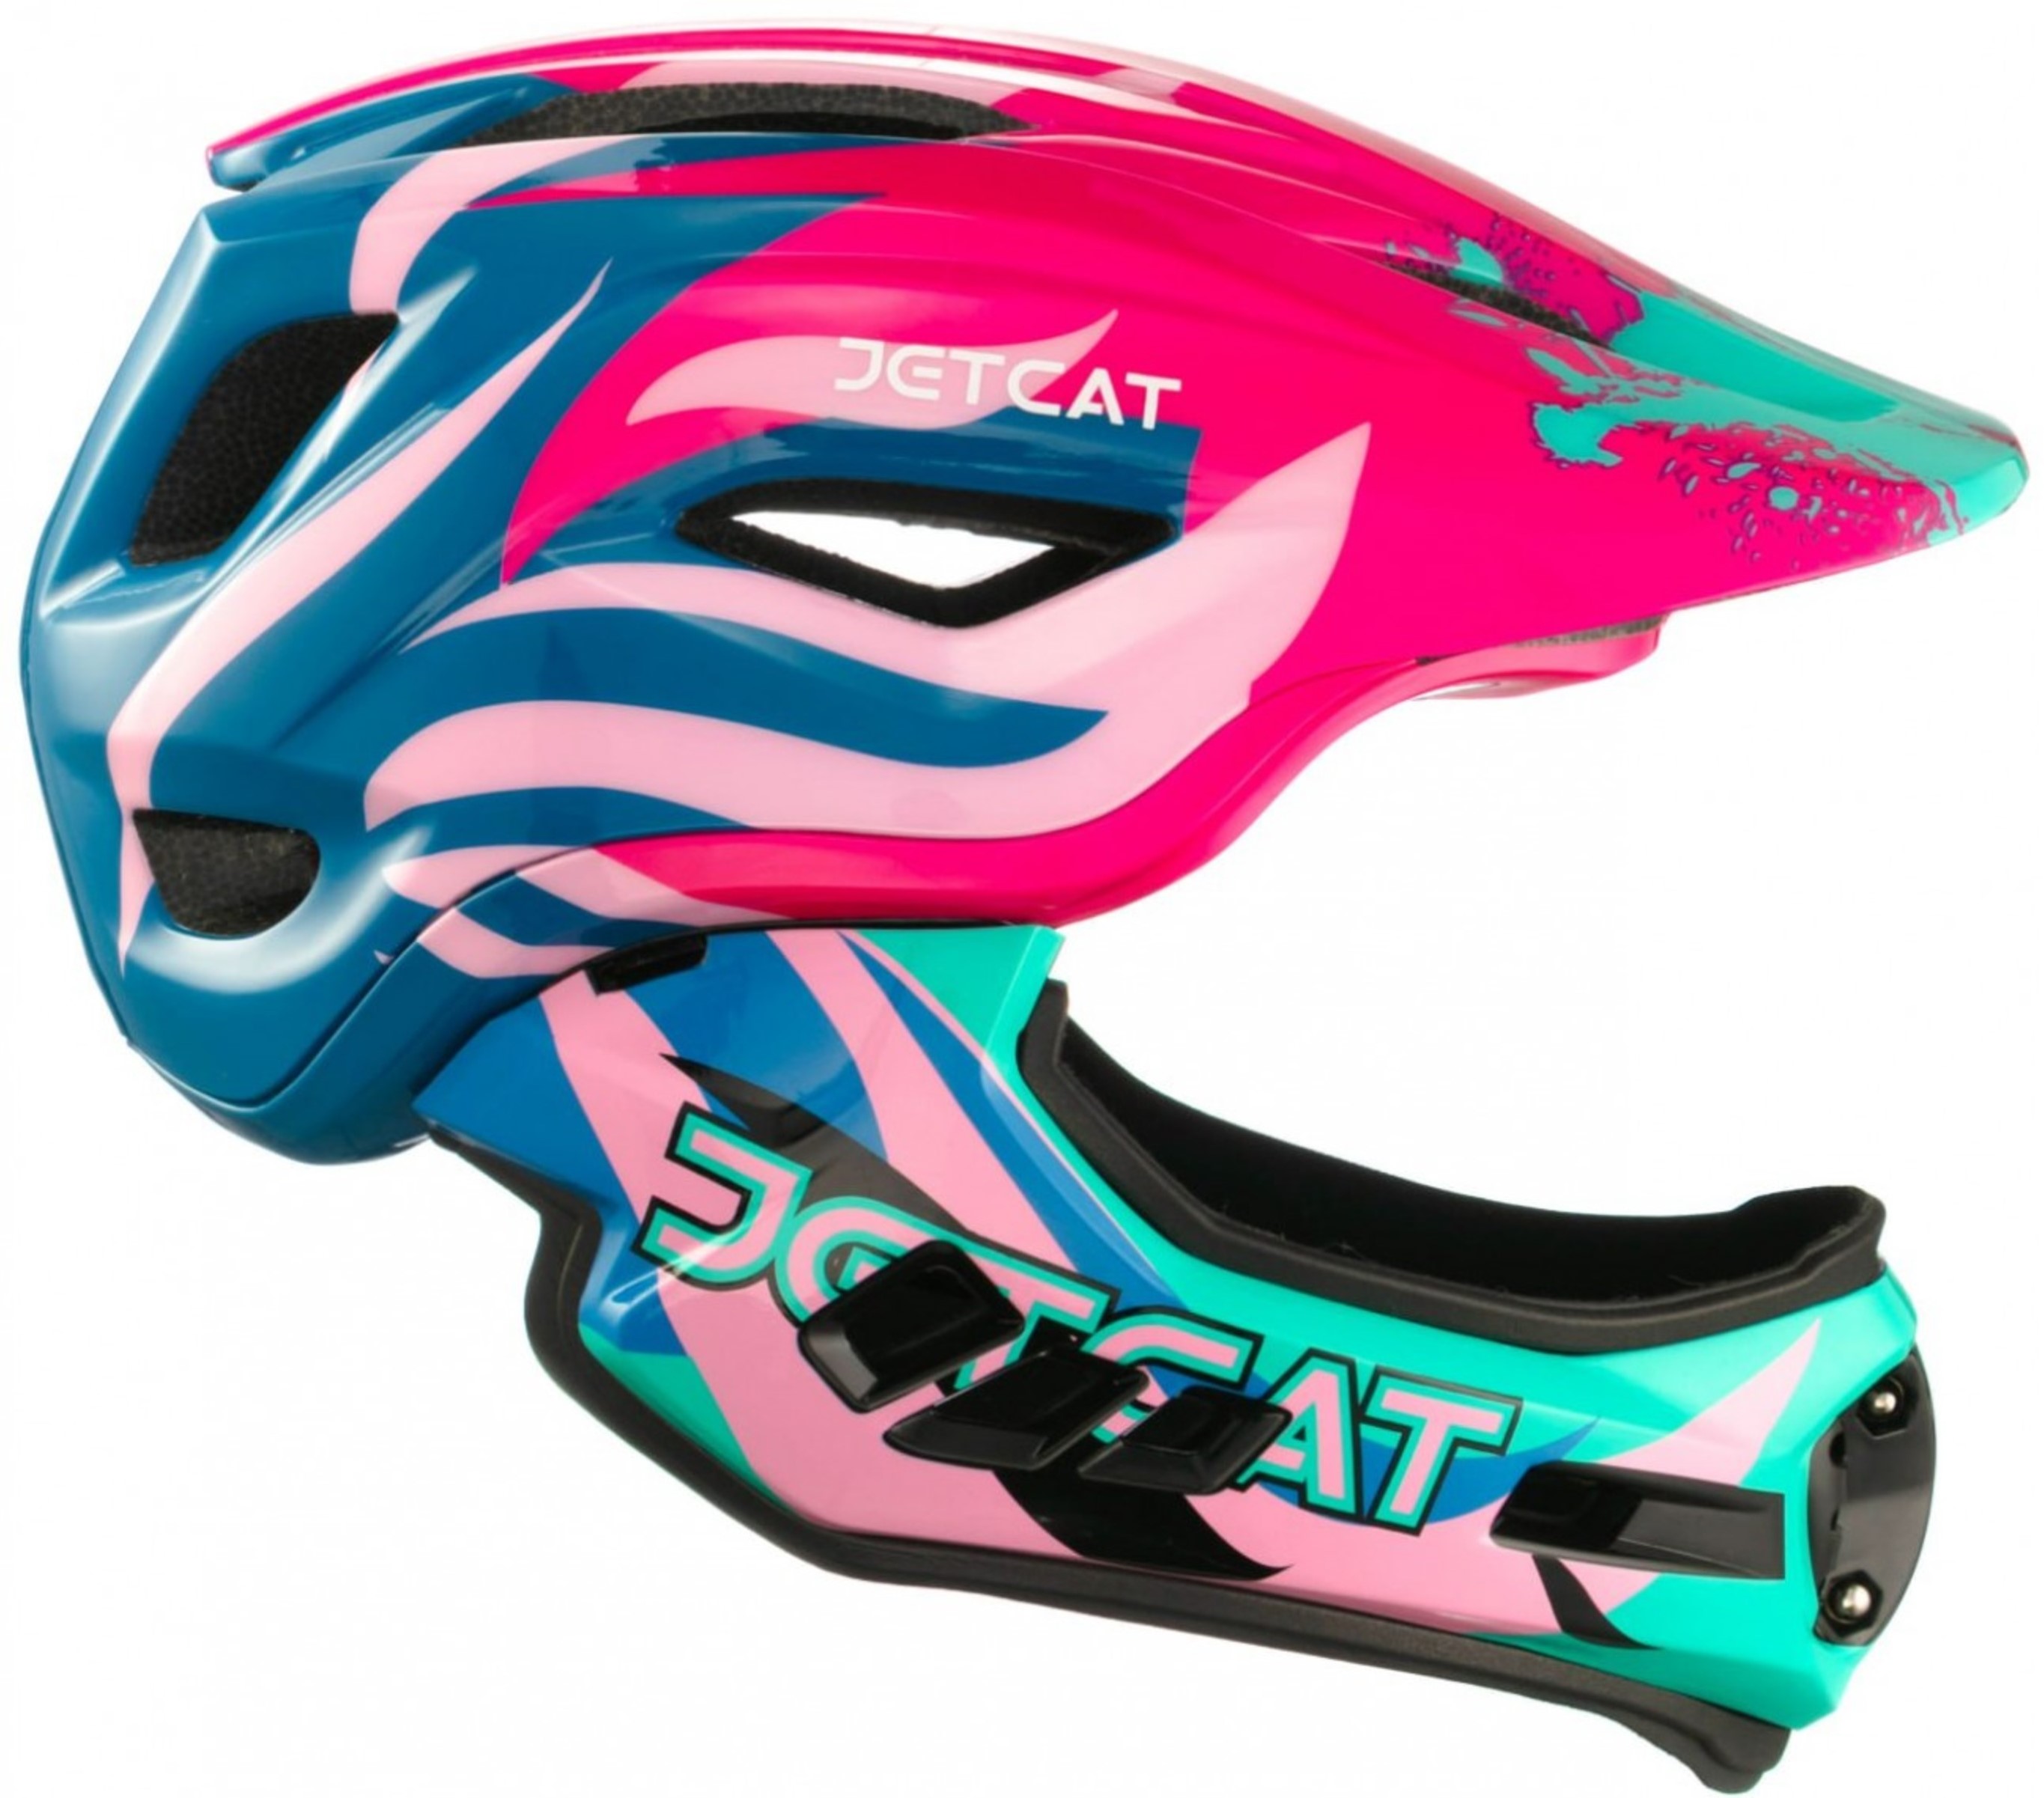 Шлем JetCat Raptor SE размер М, Pink-Blue-Mint шлем зимний sh 18 19 pads jr adj blue